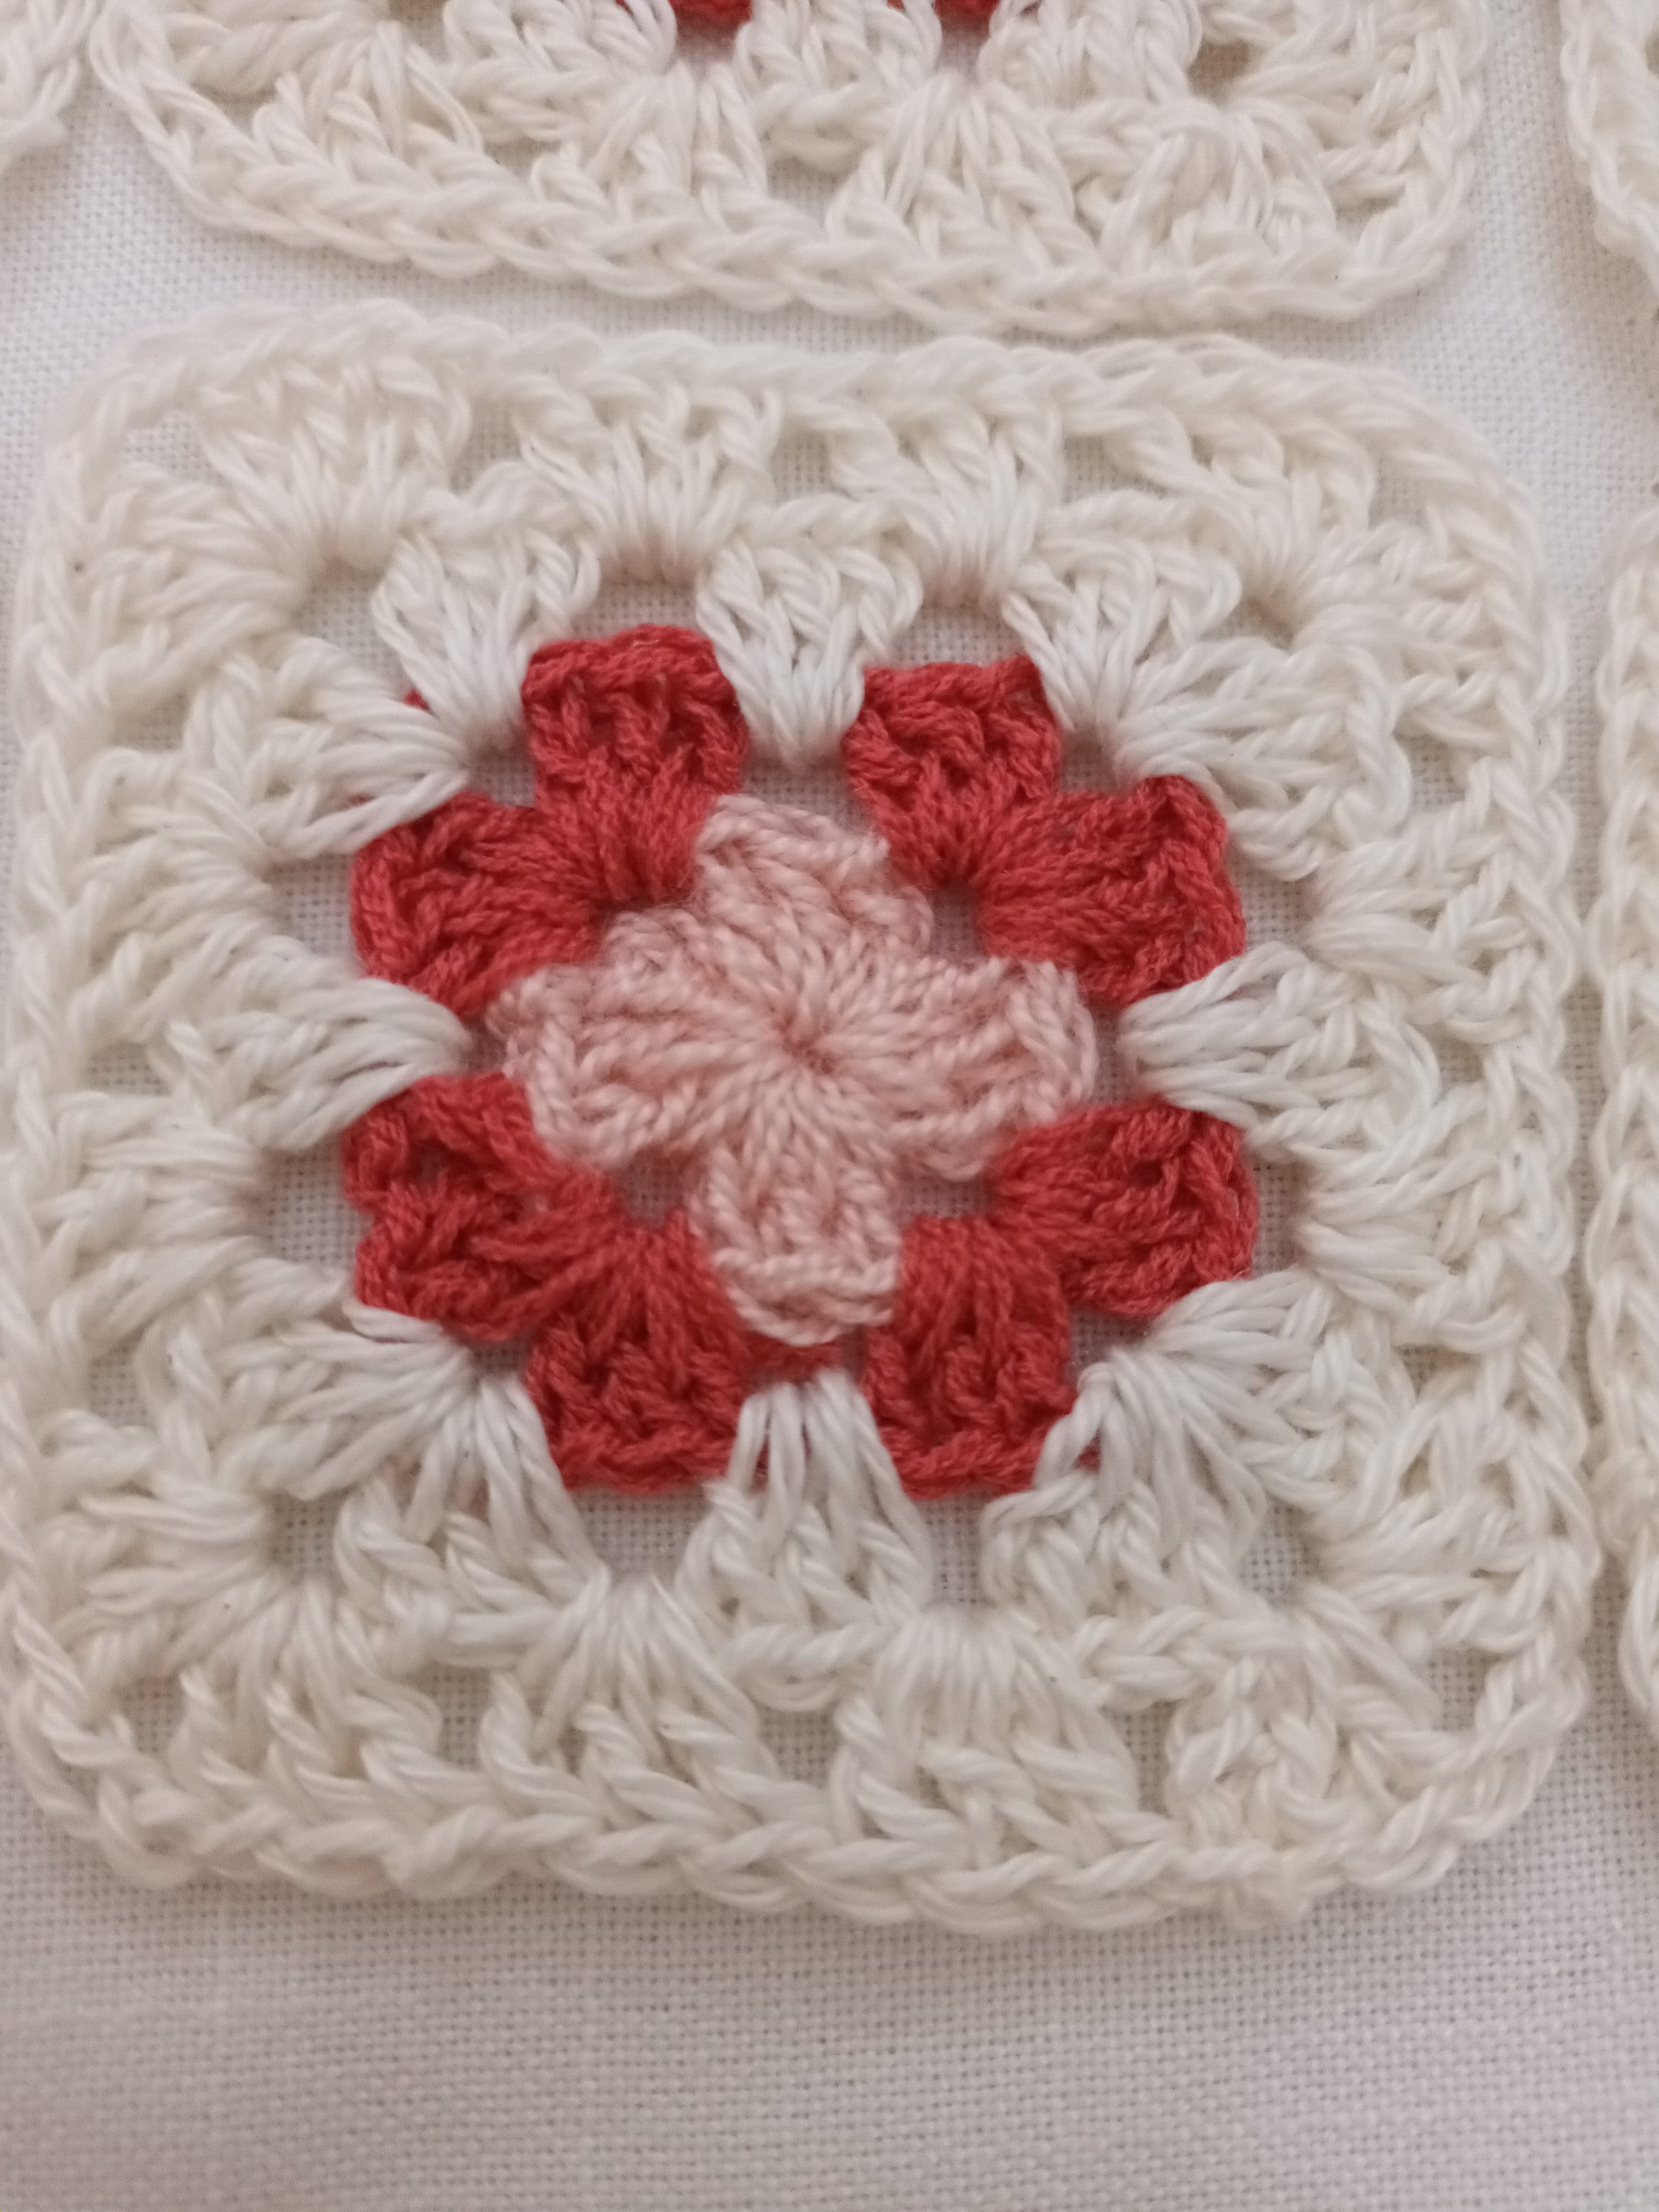 Blanket Crochet Kit for Beginners. Granny Square Crochet Throw